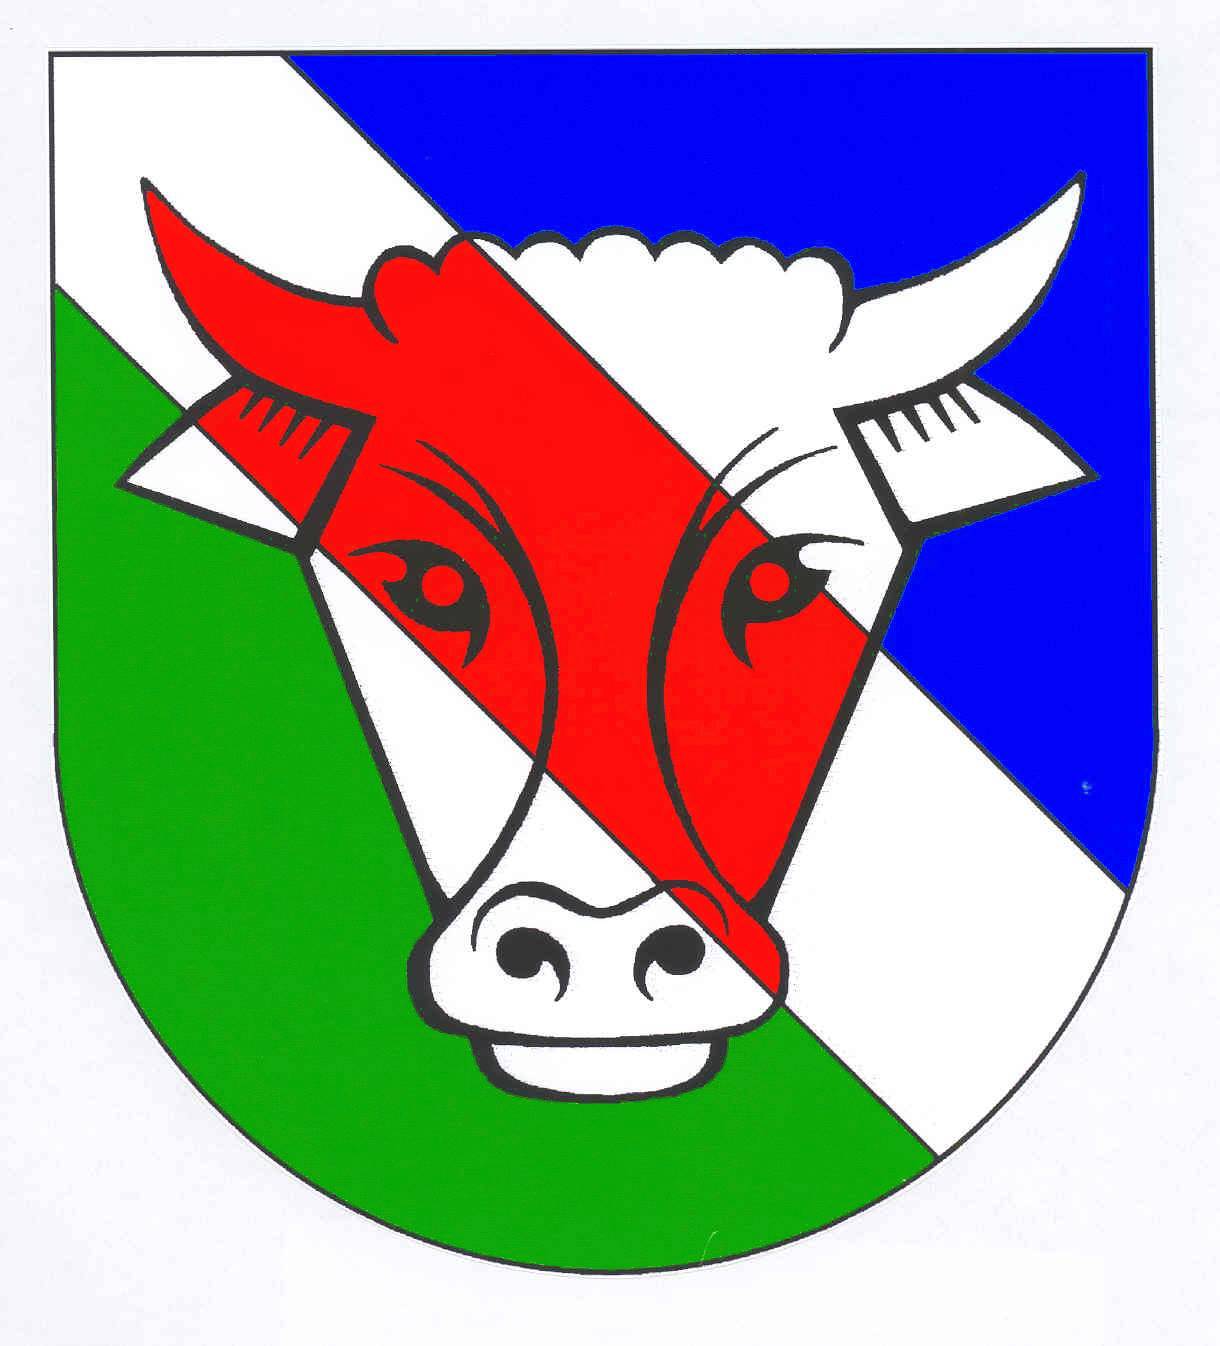 Wappen von Siezbüttel / Arms of Siezbüttel